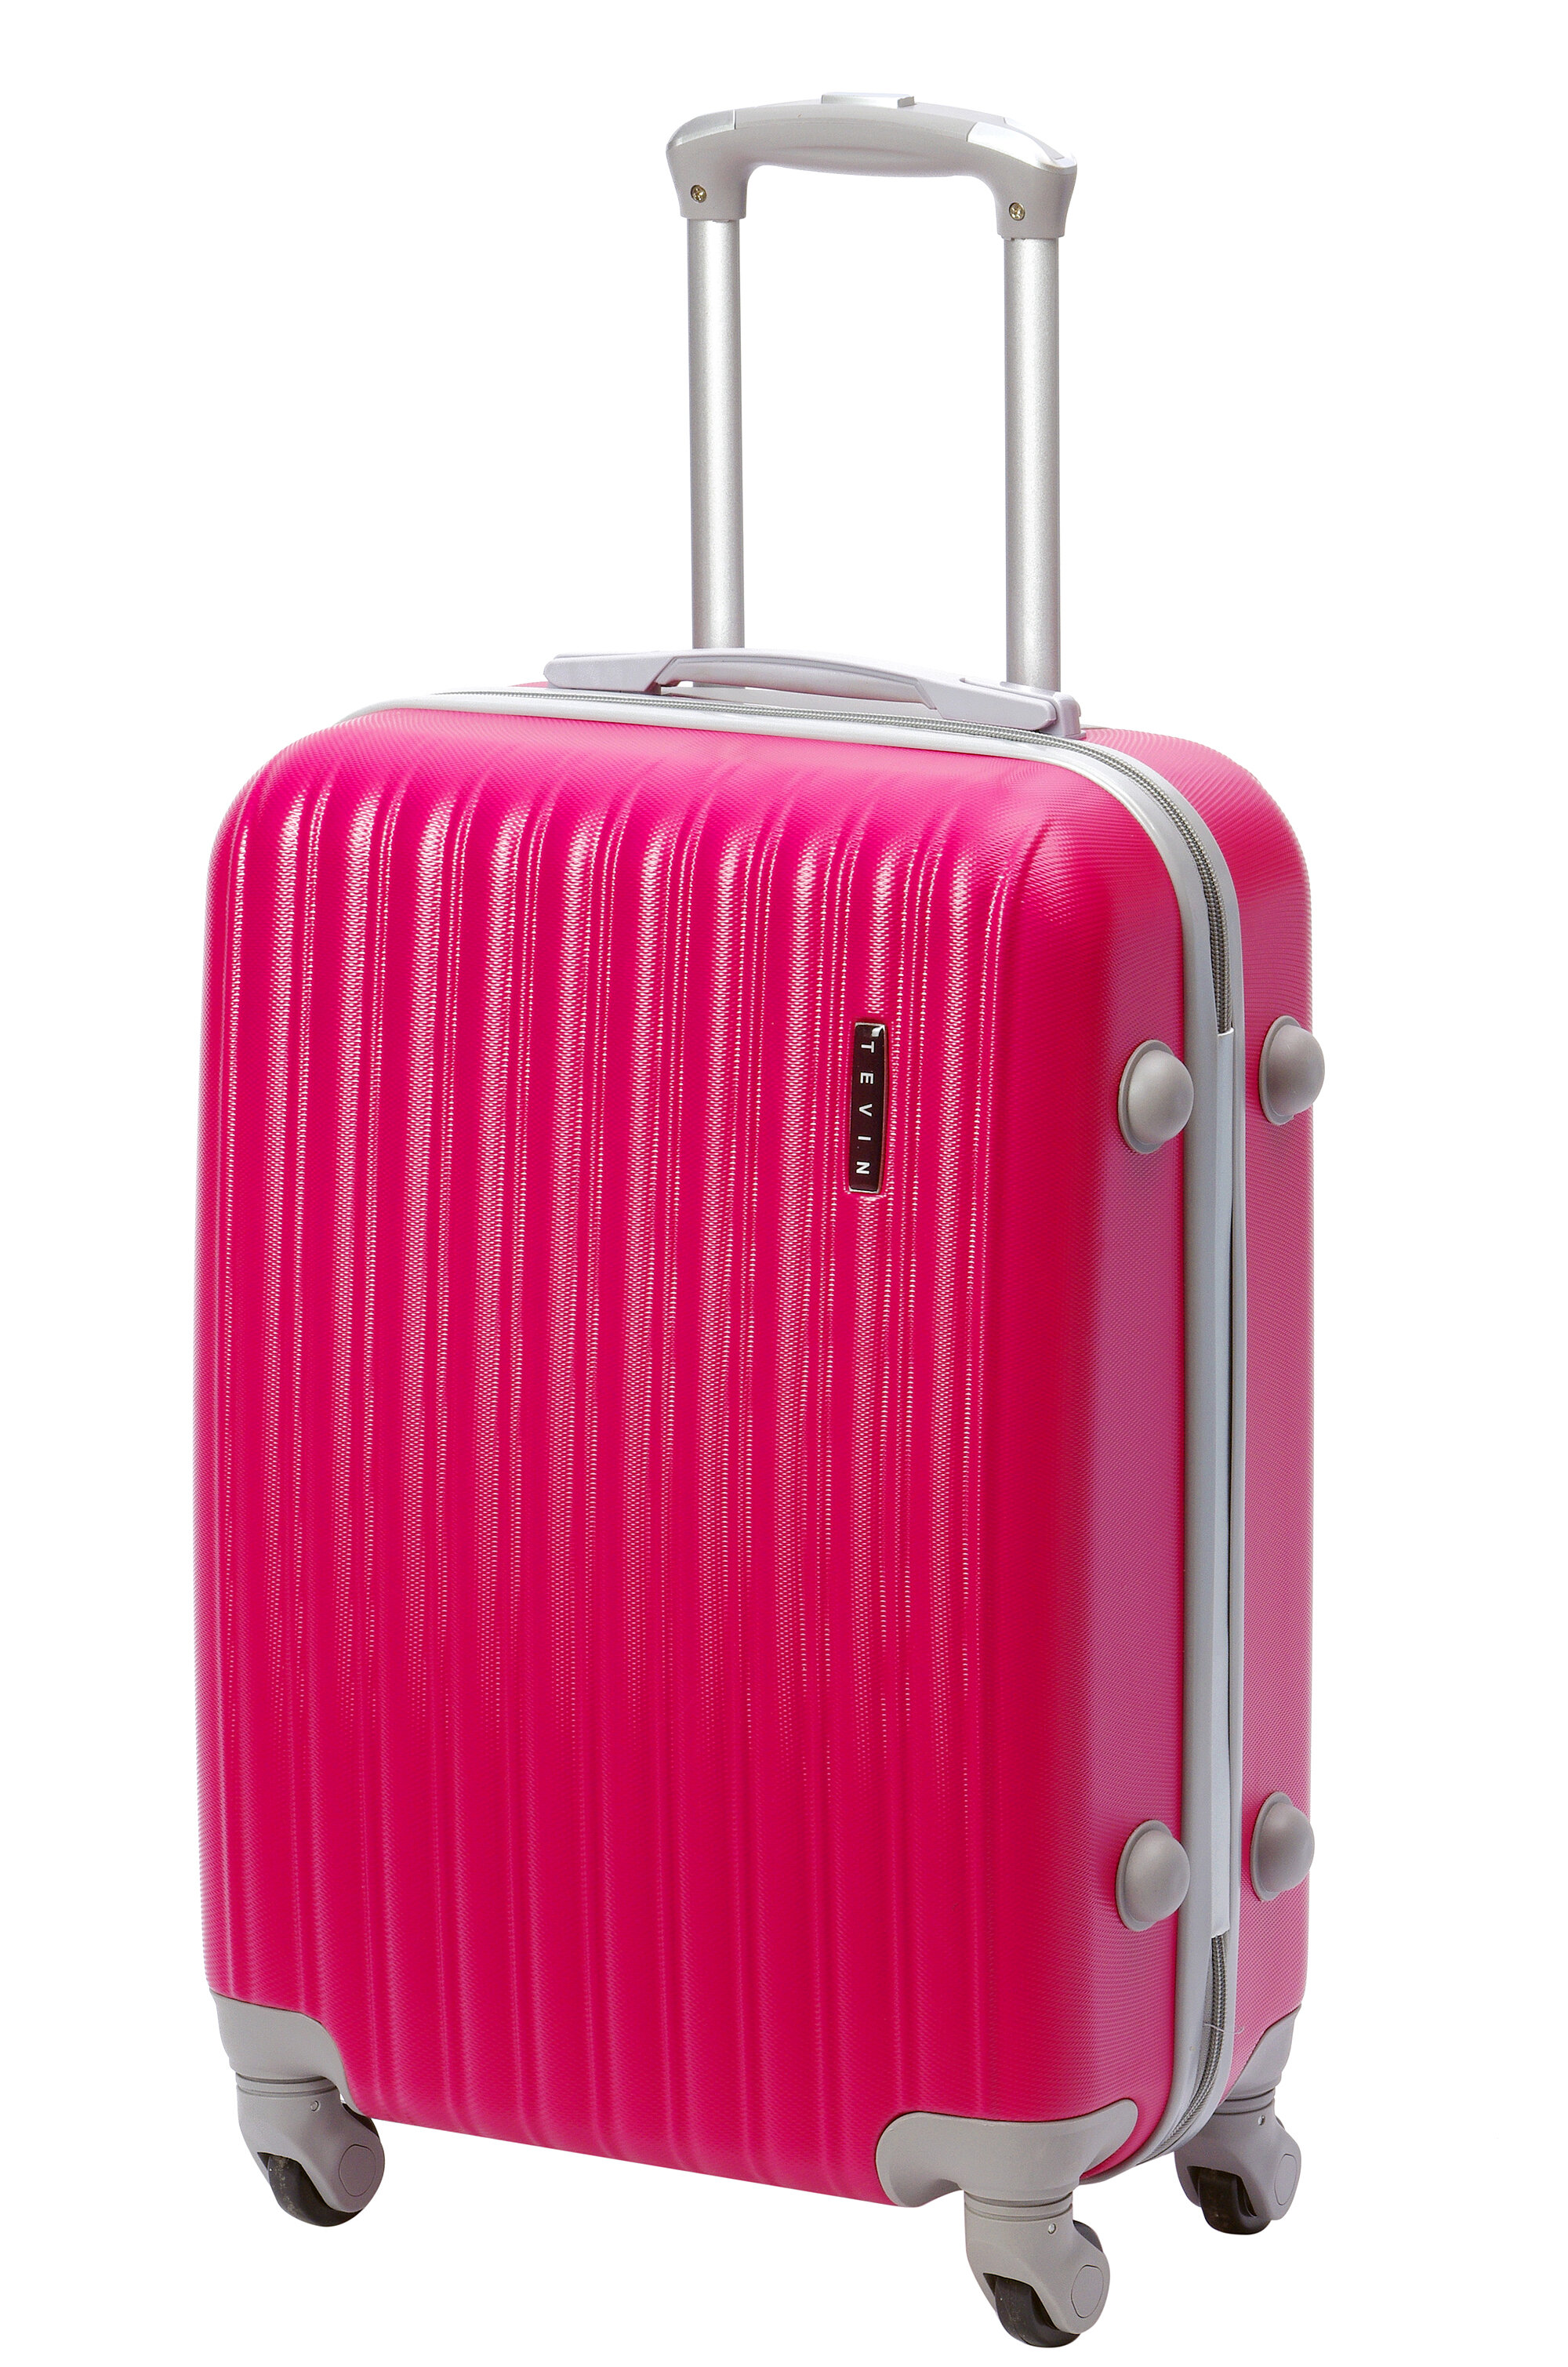 Чемодан на колесах дорожный средний багаж на двоих для путешествий m+ Тевин размер М+ 68 см 77 л прочный поликарбонат abs пластик Розовый яркий